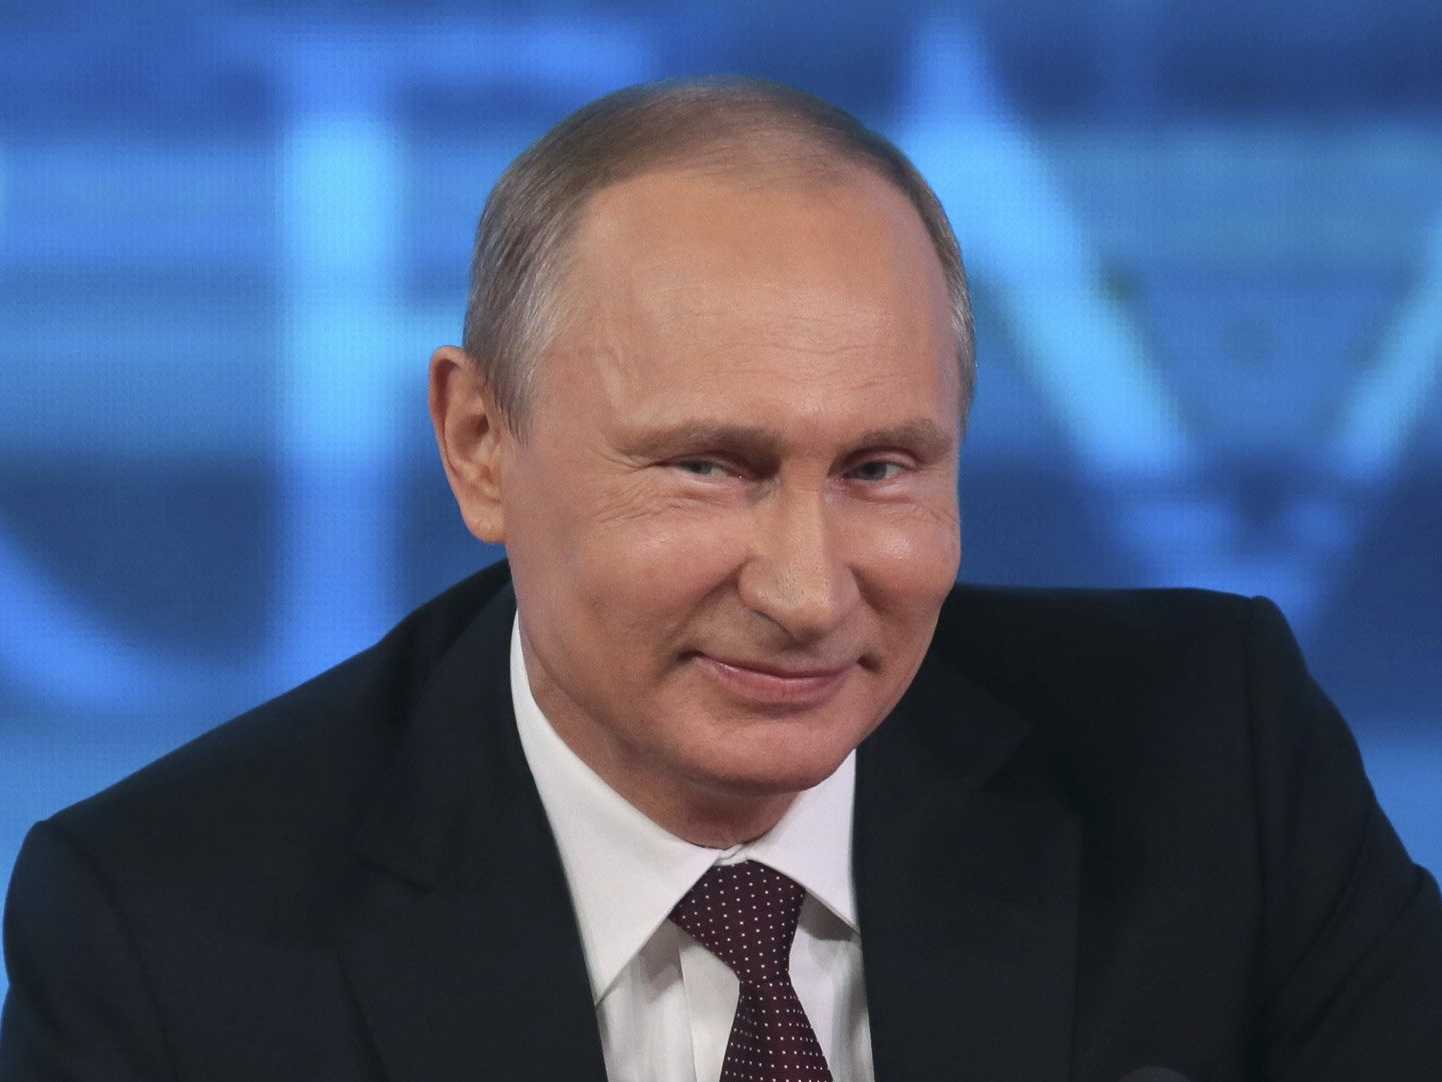 Теперь гладенький: сеть удивило изменившееся до неузнаваемости лицо Путина